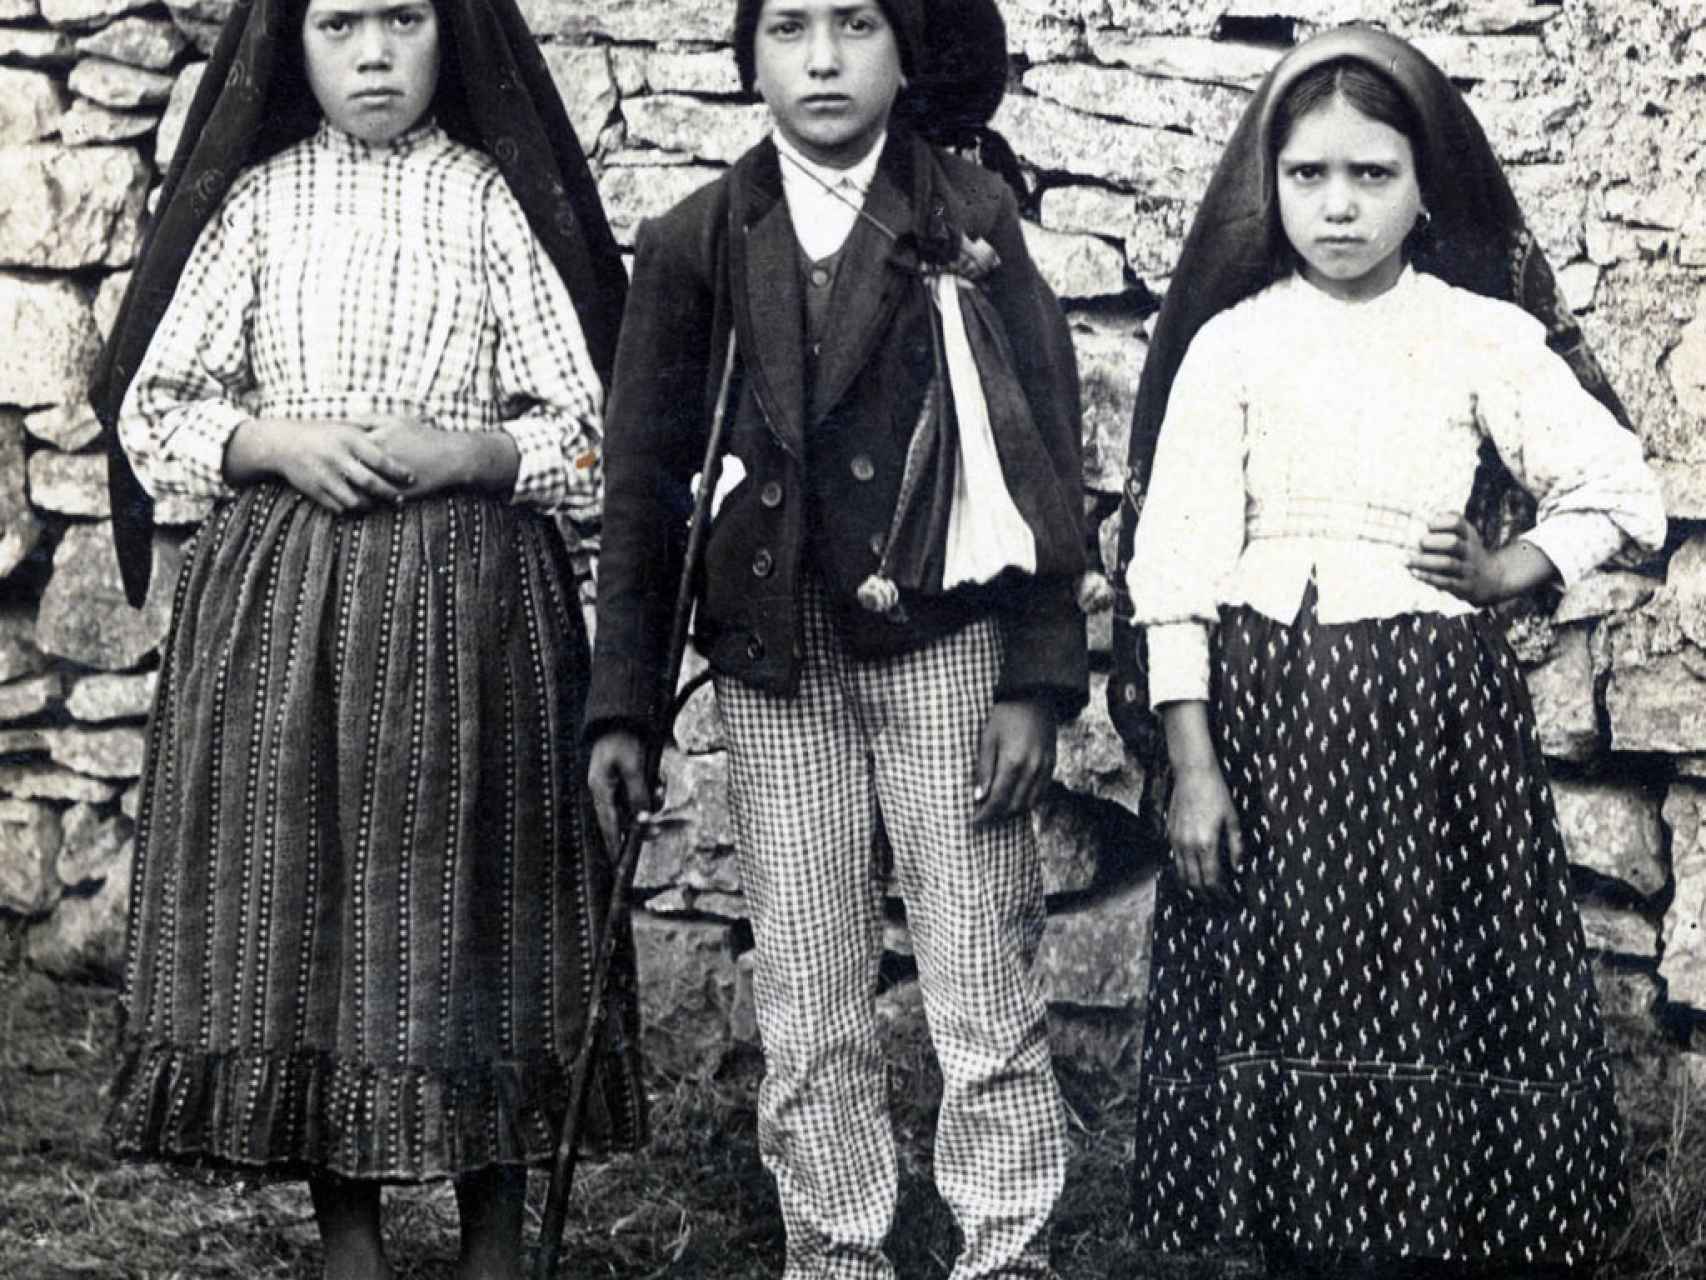 De izquierda a derecha, Lucía, Francisco y Jacinta, los pastorcillos que vieron a la virgen.